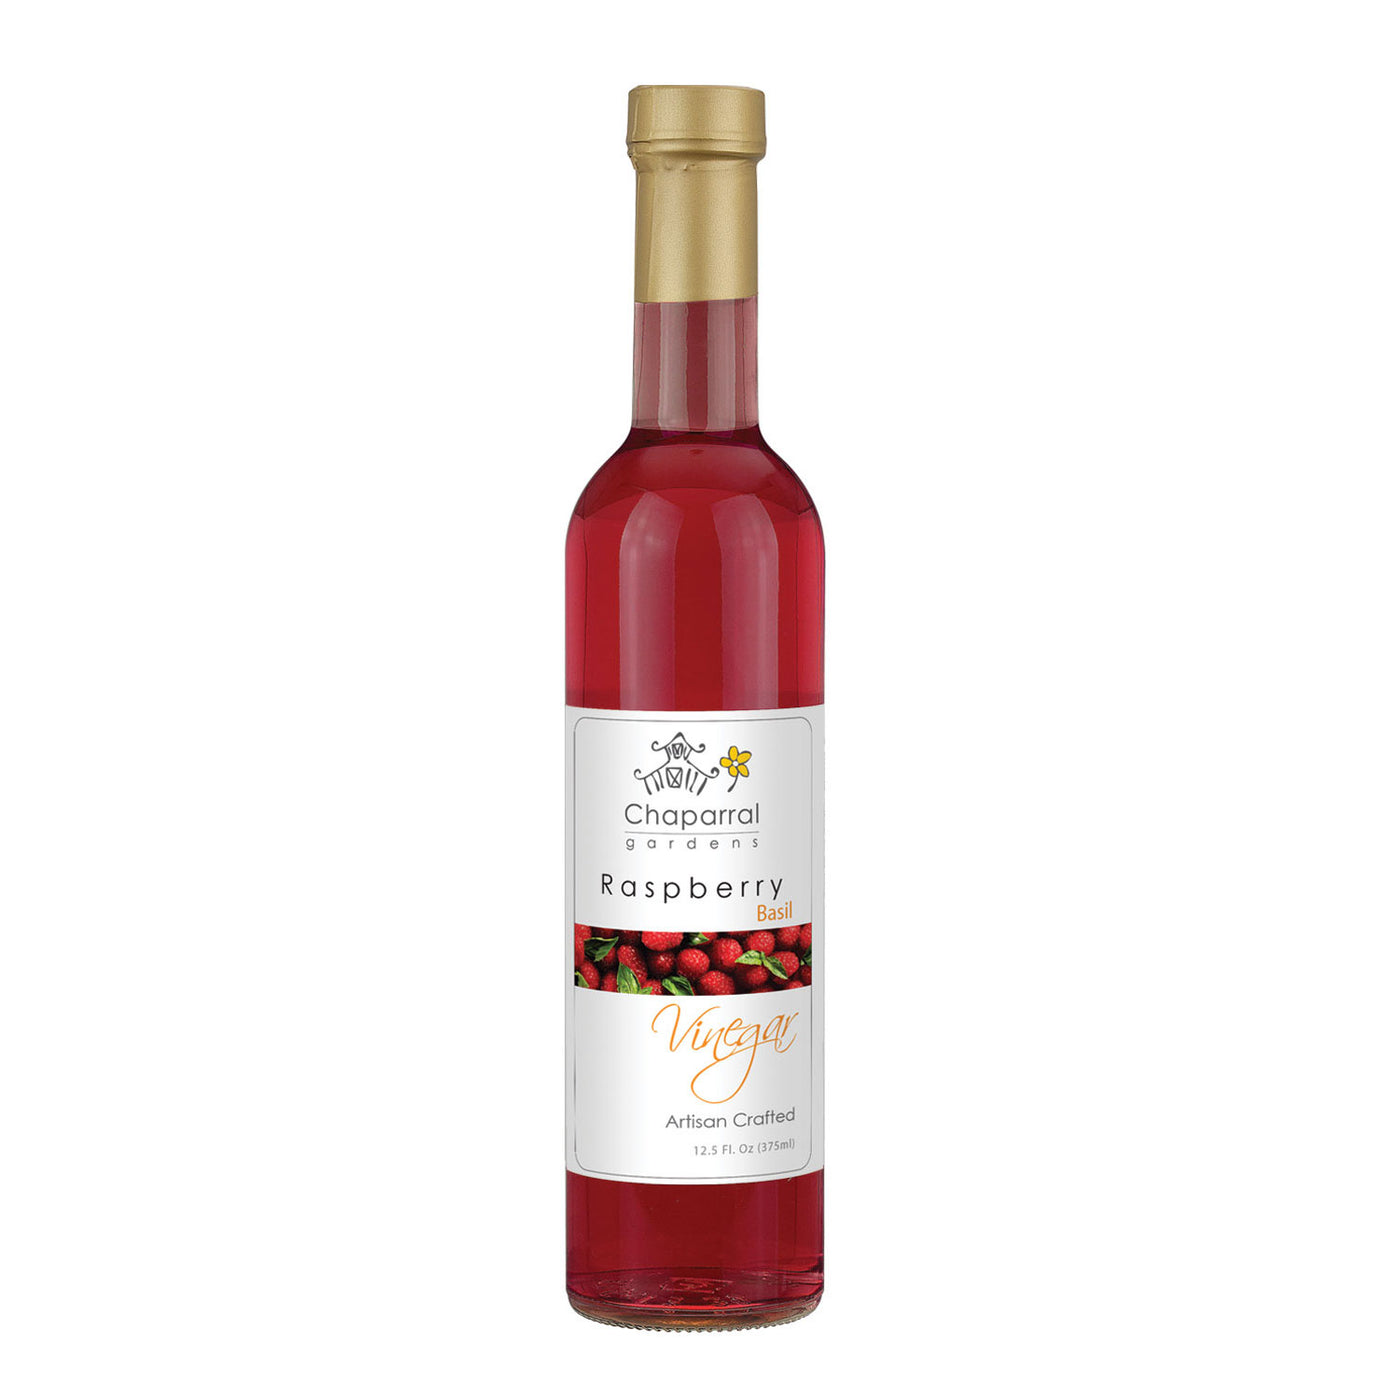 Raspberry Basil Fruit Vinegar